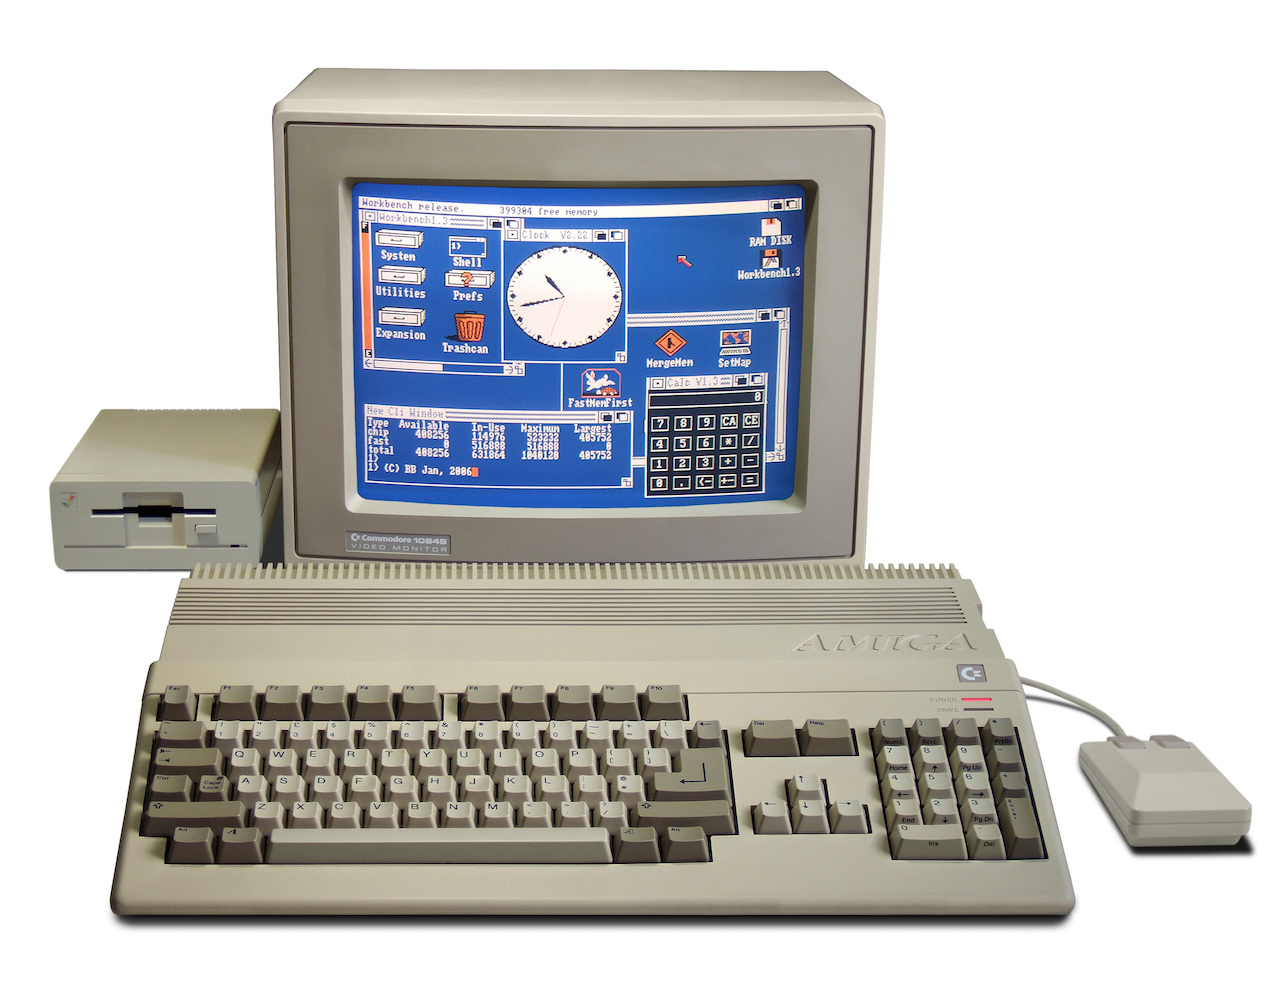 Et nytt Amiga-system slippes i år, og skal være kompatibelt med Amiga 500.